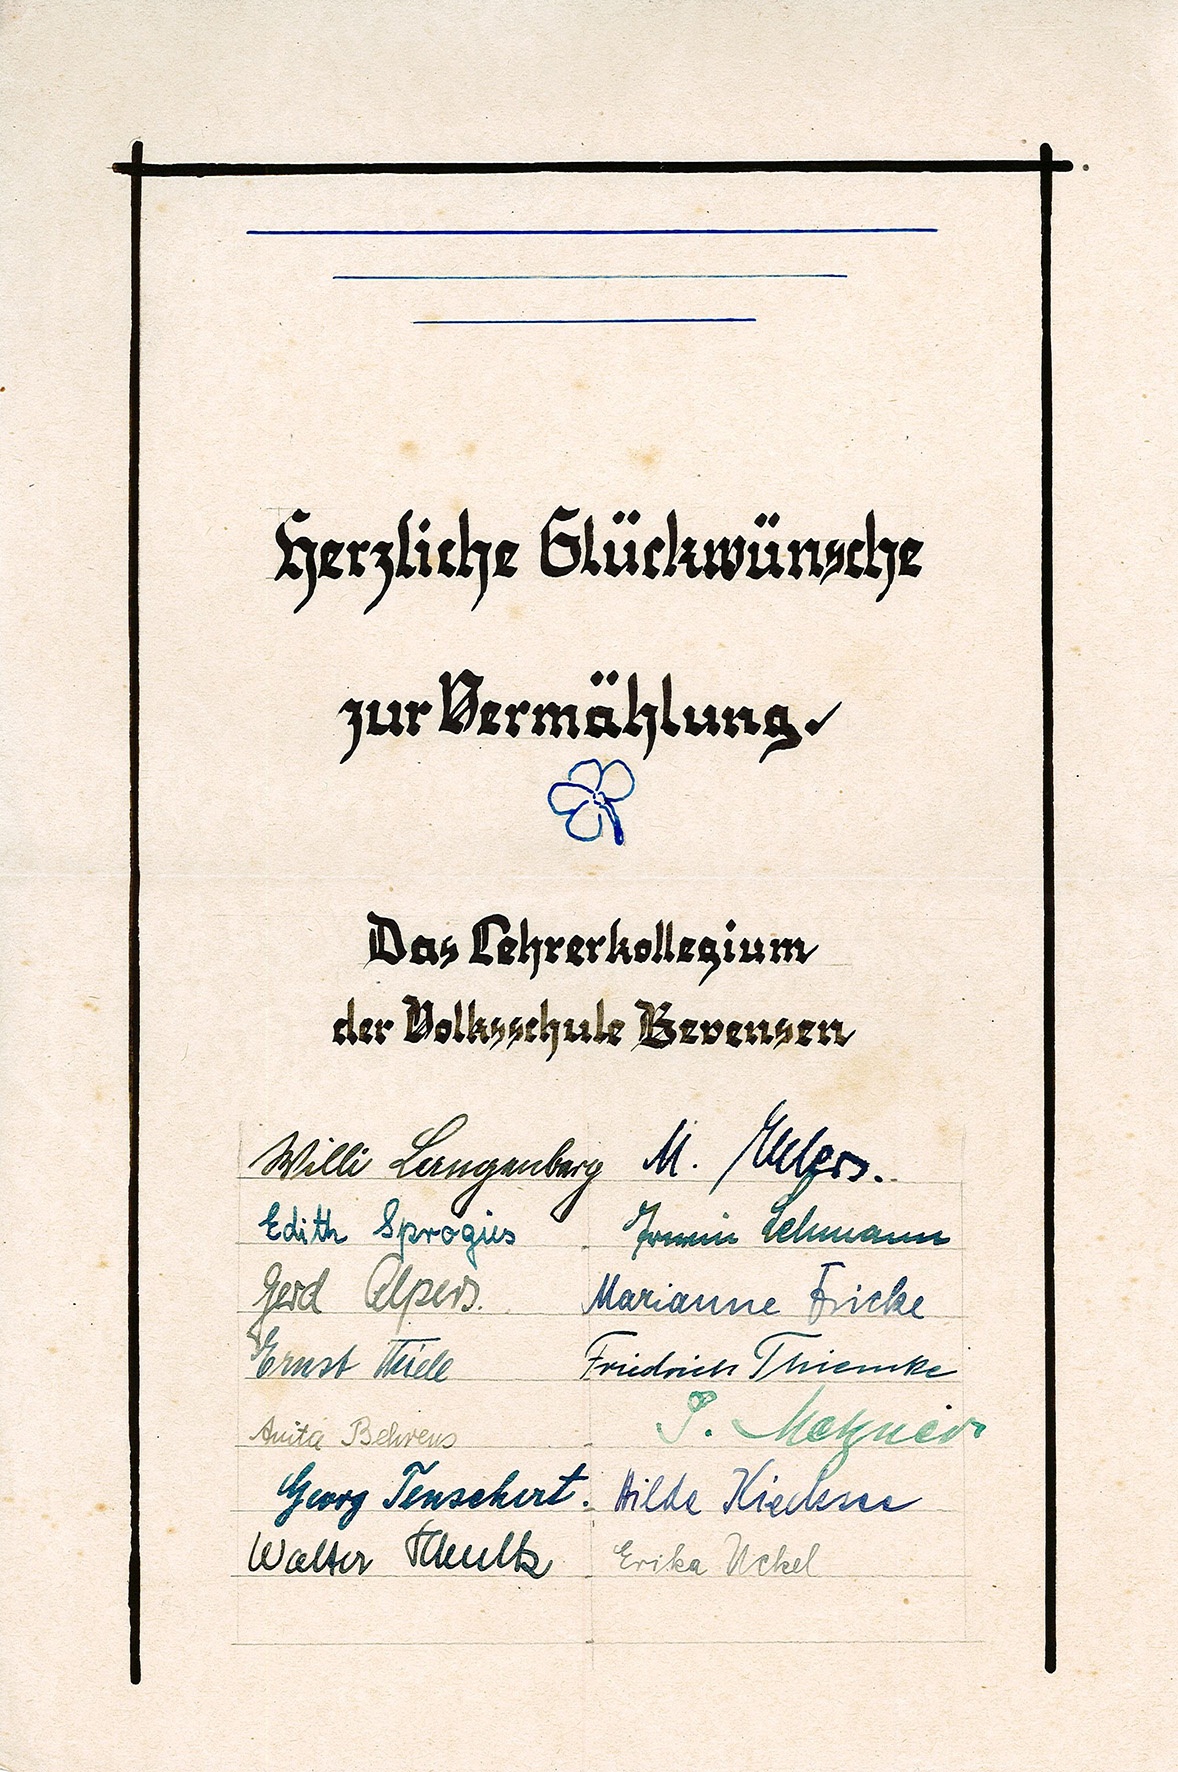 Glückwunschkarte zur Hochzeit an Ingeborg Siebert vom Lehrerkollegium der Volksschule Bevensen, 1948 (Museum Wolmirstedt RR-F)